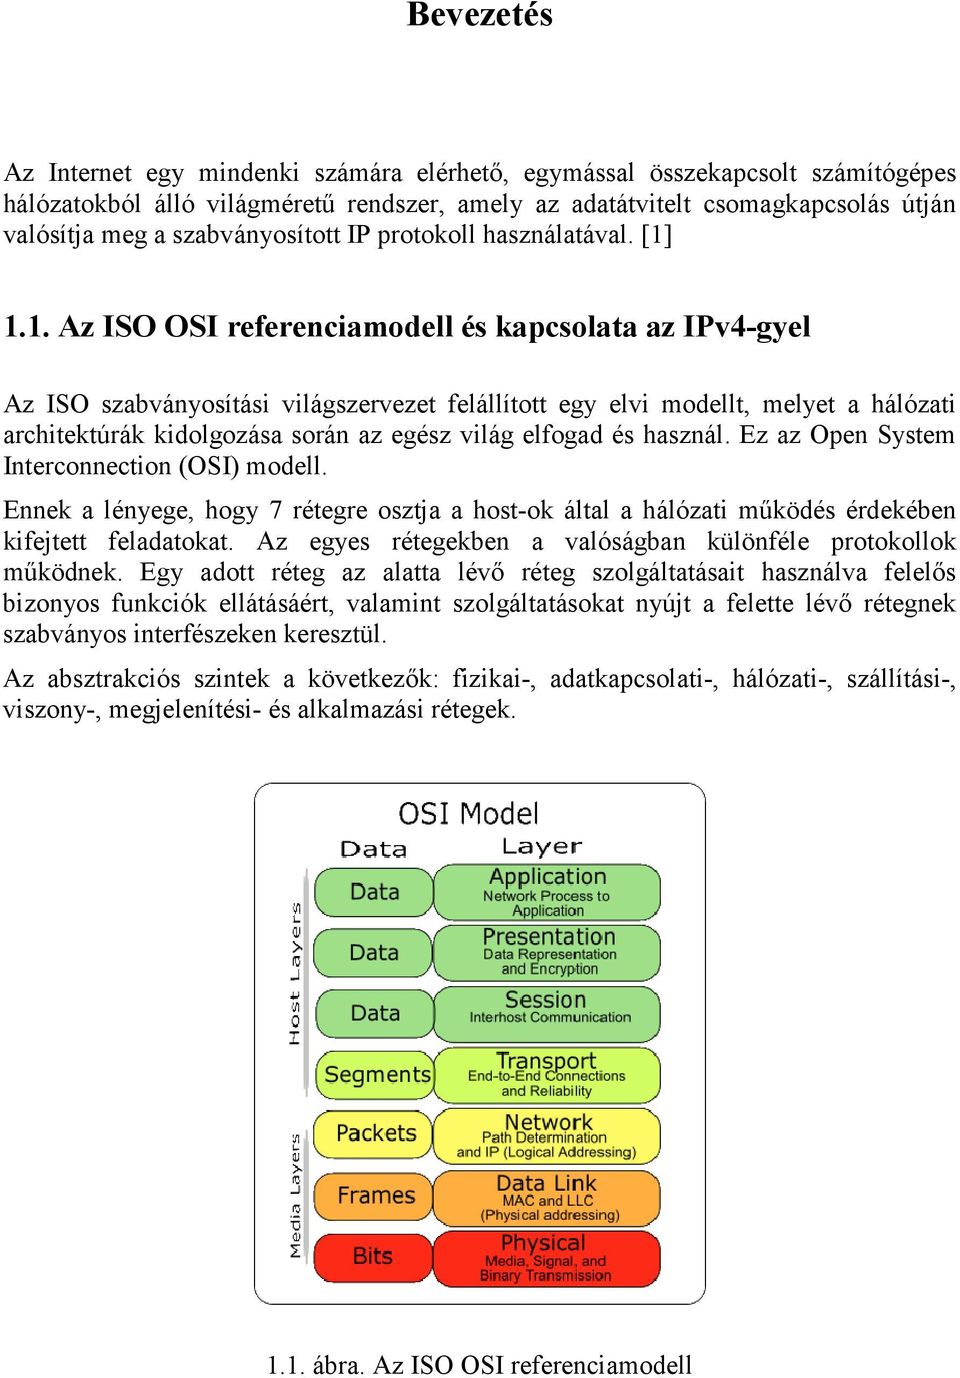 1.1. Az ISO OSI referenciamodell és kapcsolata az IPv4-gyel Az ISO szabványosítási világszervezet felállított egy elvi modellt, melyet a hálózati architektúrák kidolgozása során az egész világ